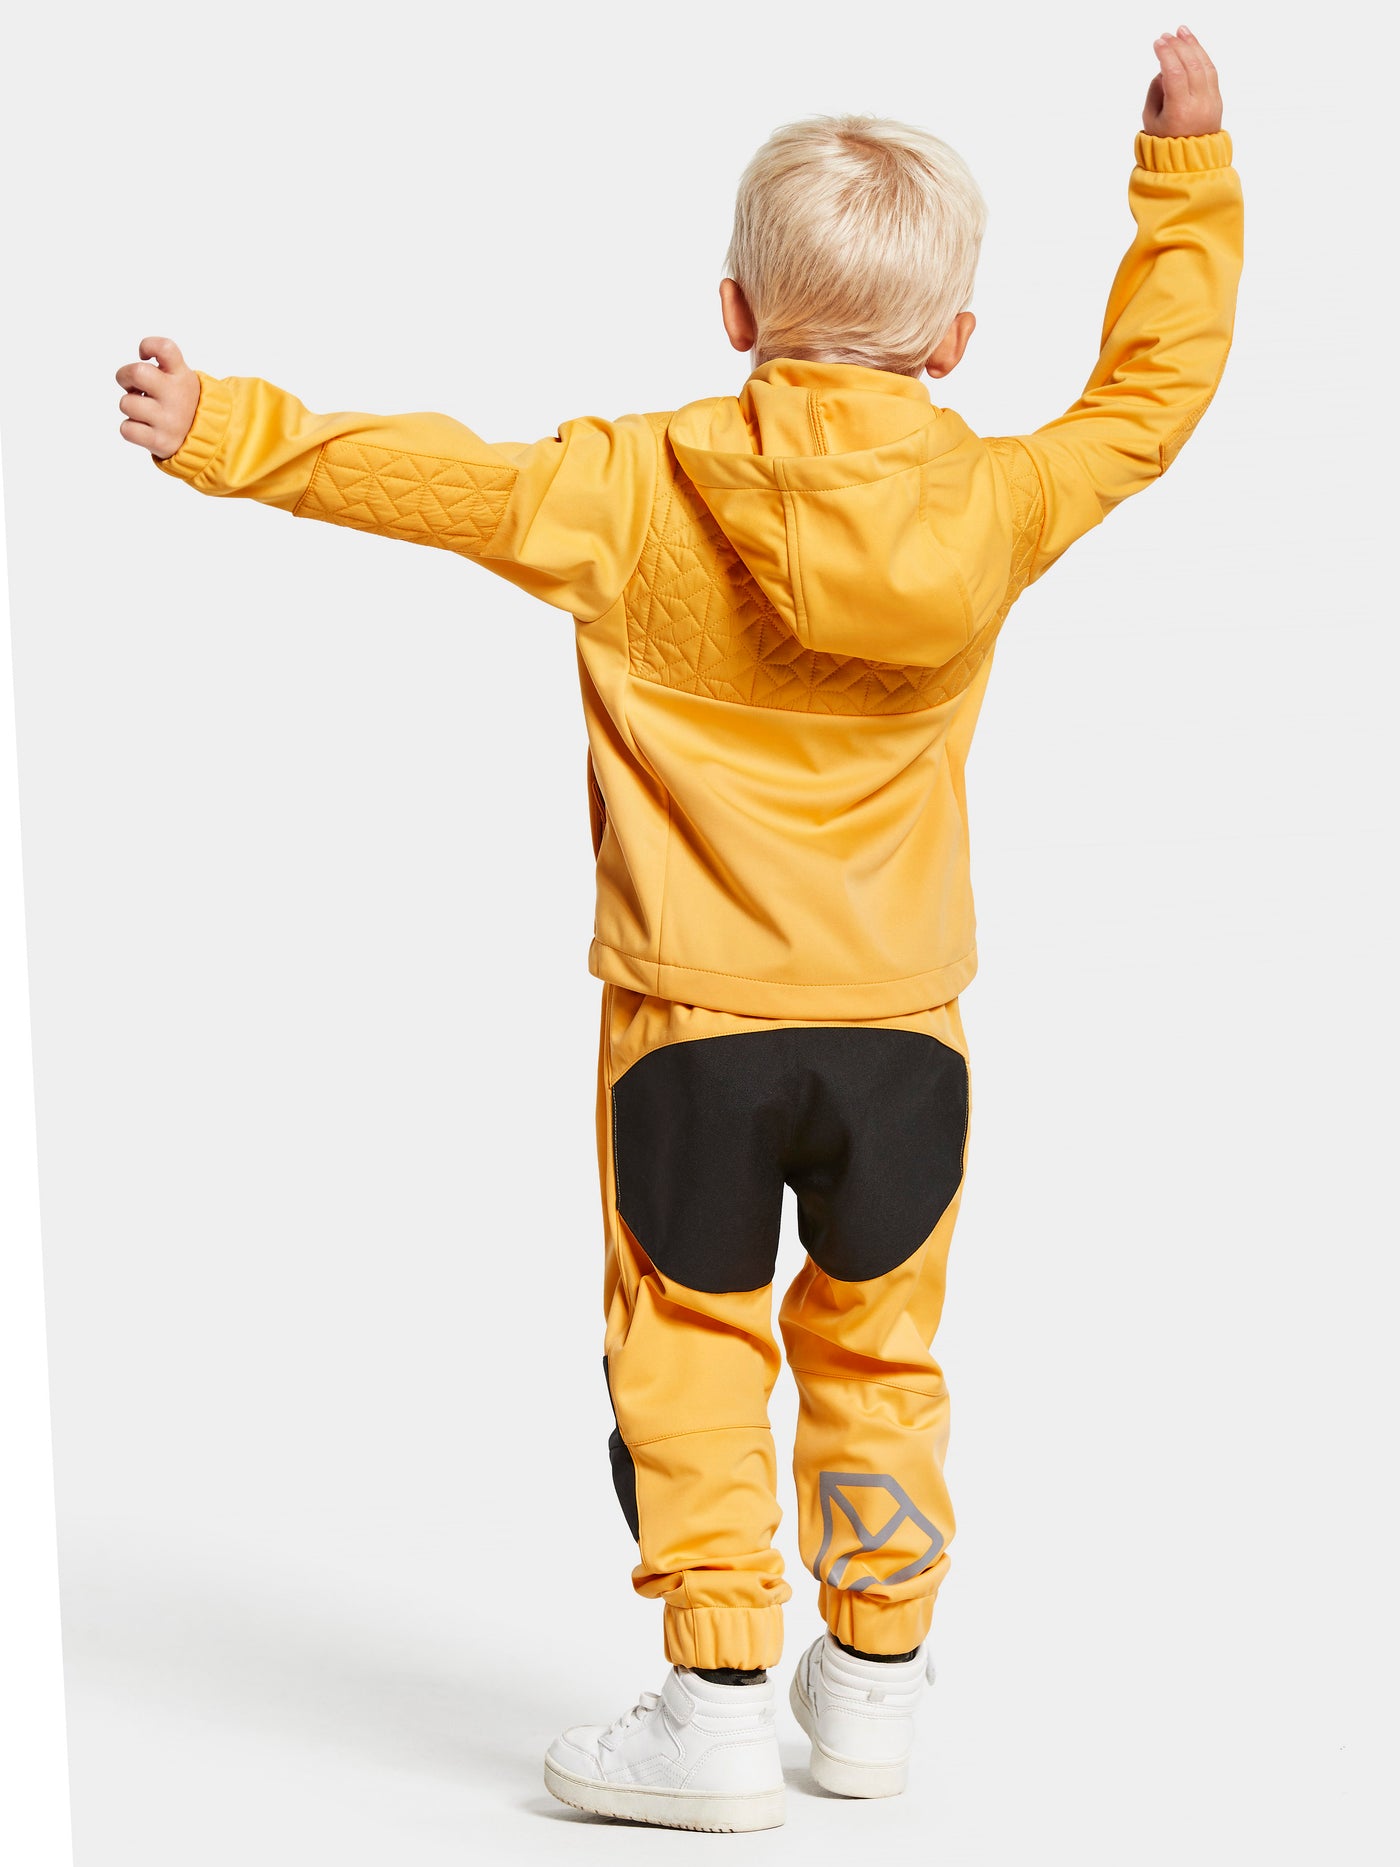 Didriksonsin lasten Briska hybriditakki keltaisessa sävyssä lapsen päällä takaa kuvattuna.